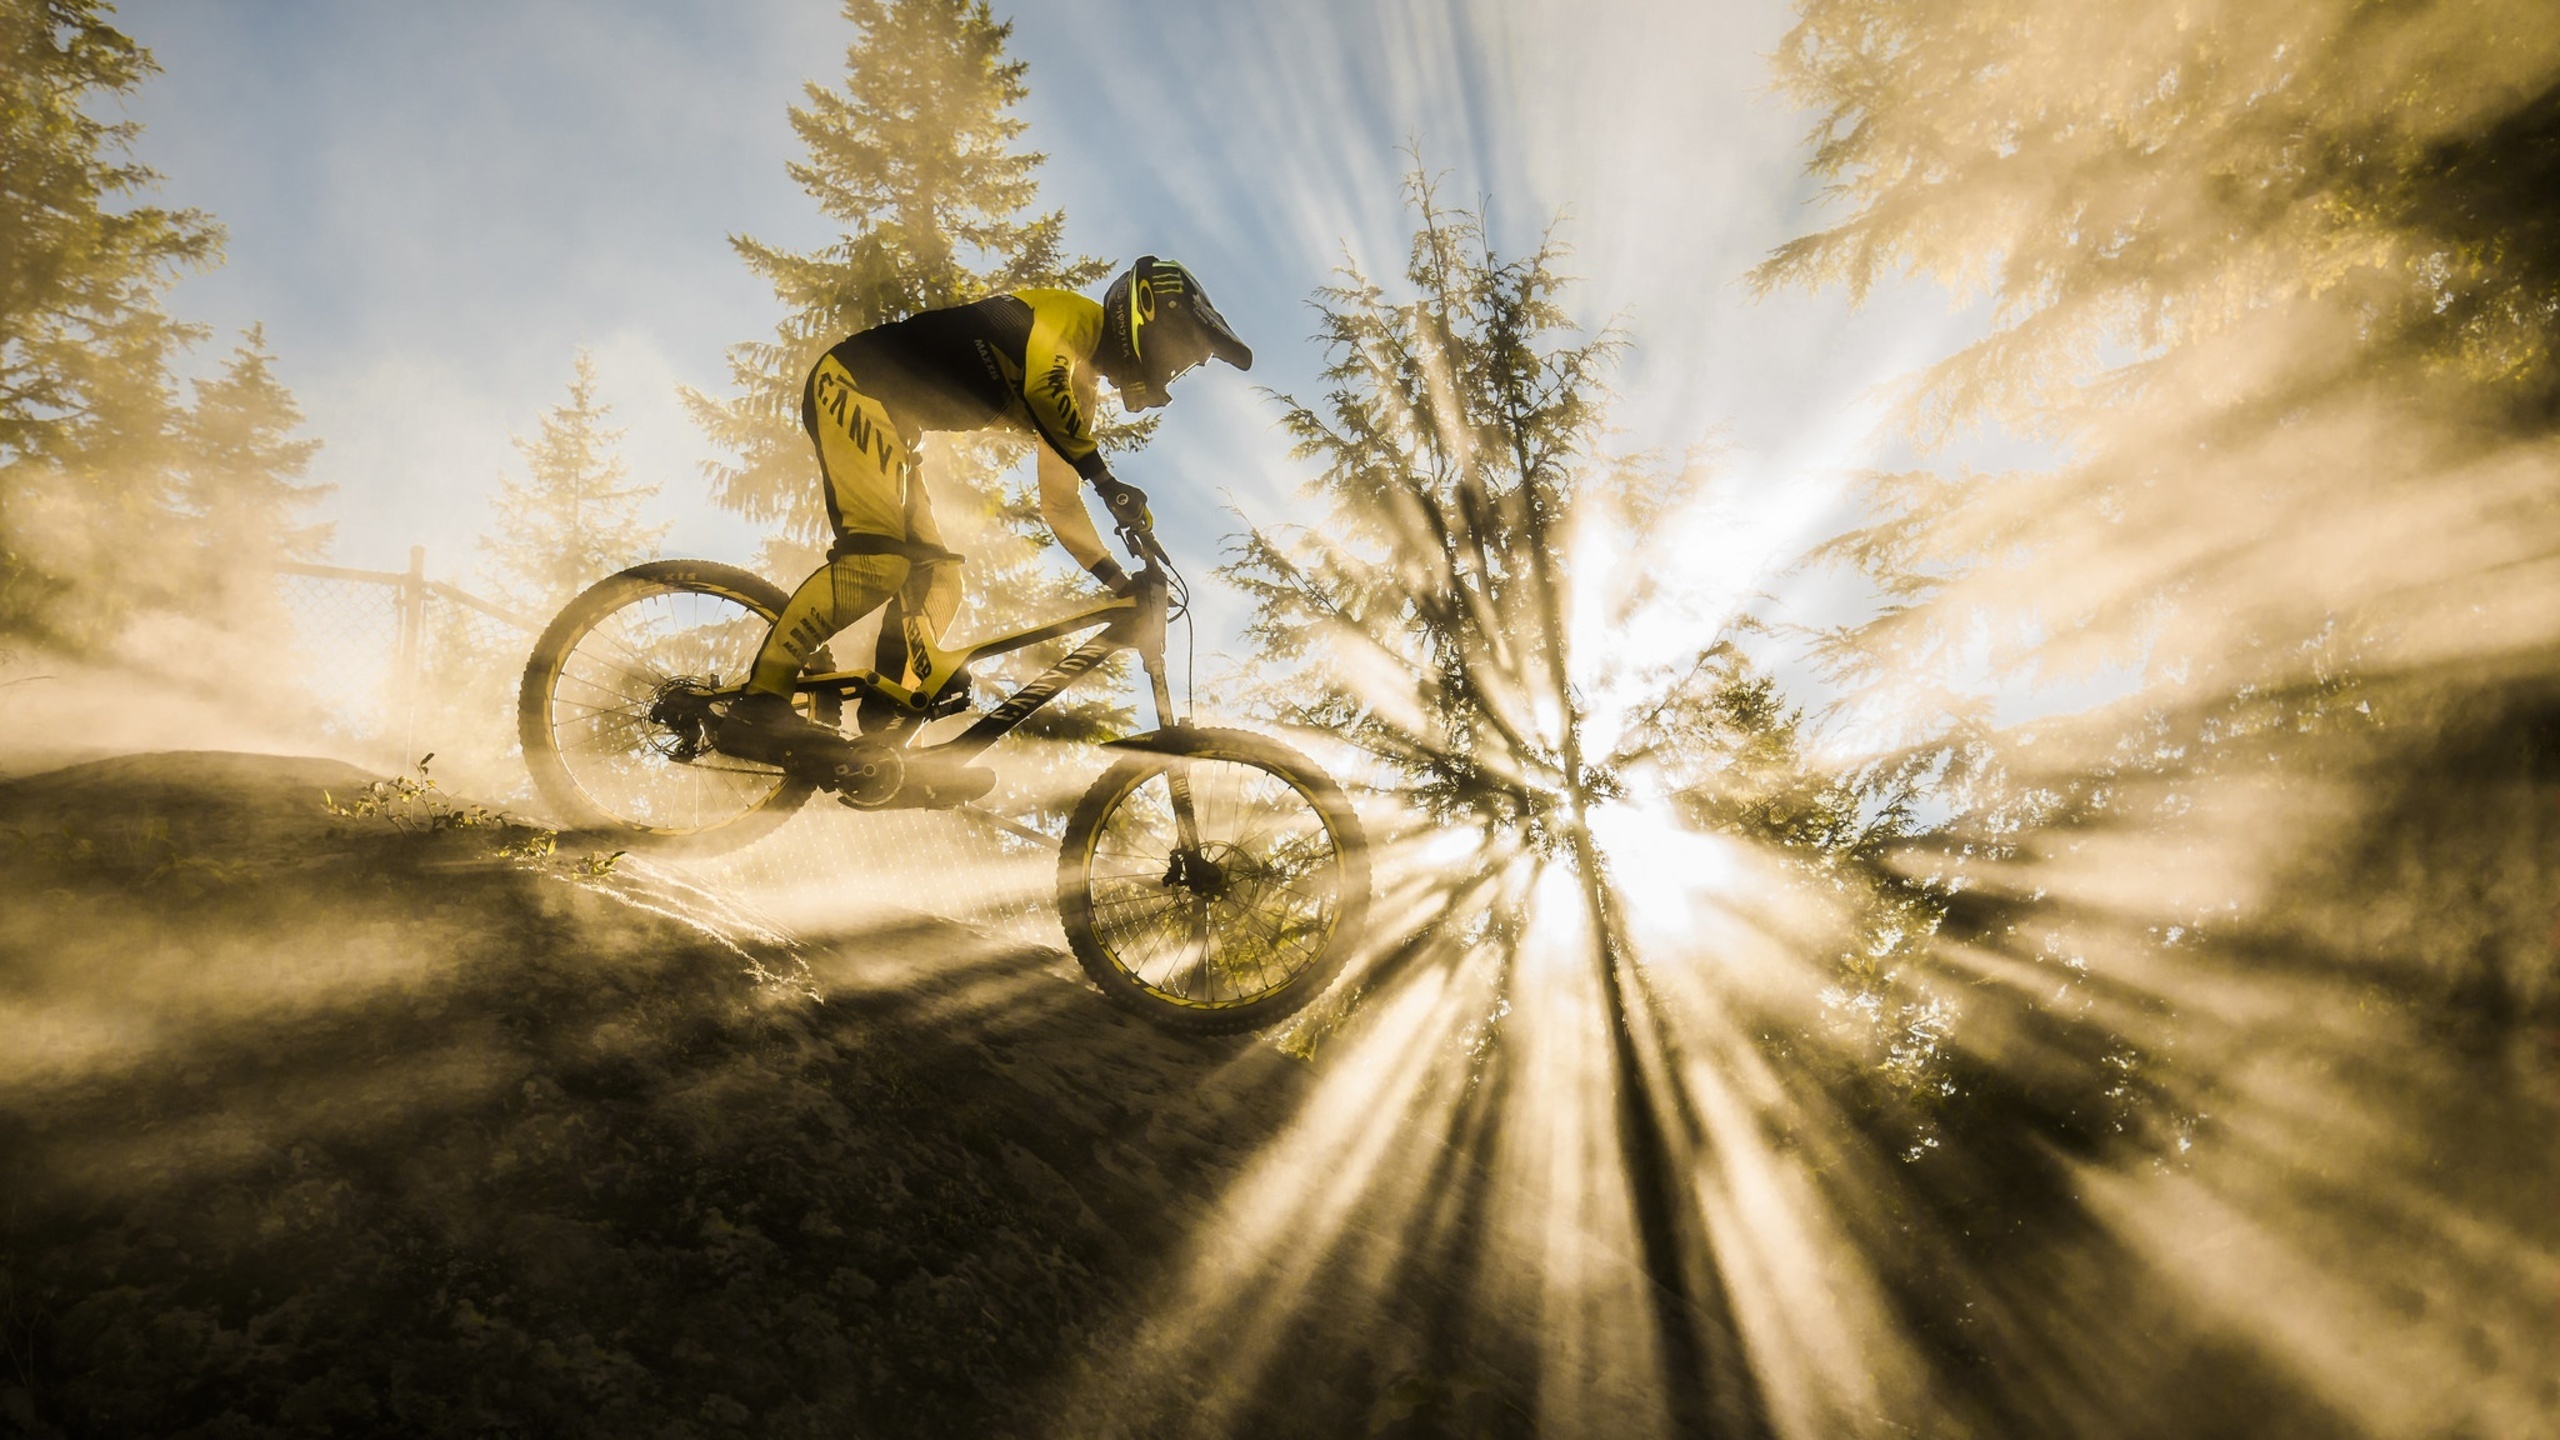 Mountain bike sunbeam, High definition images, Beautiful backgrounds, Stunning photos, 2560x1440 HD Desktop